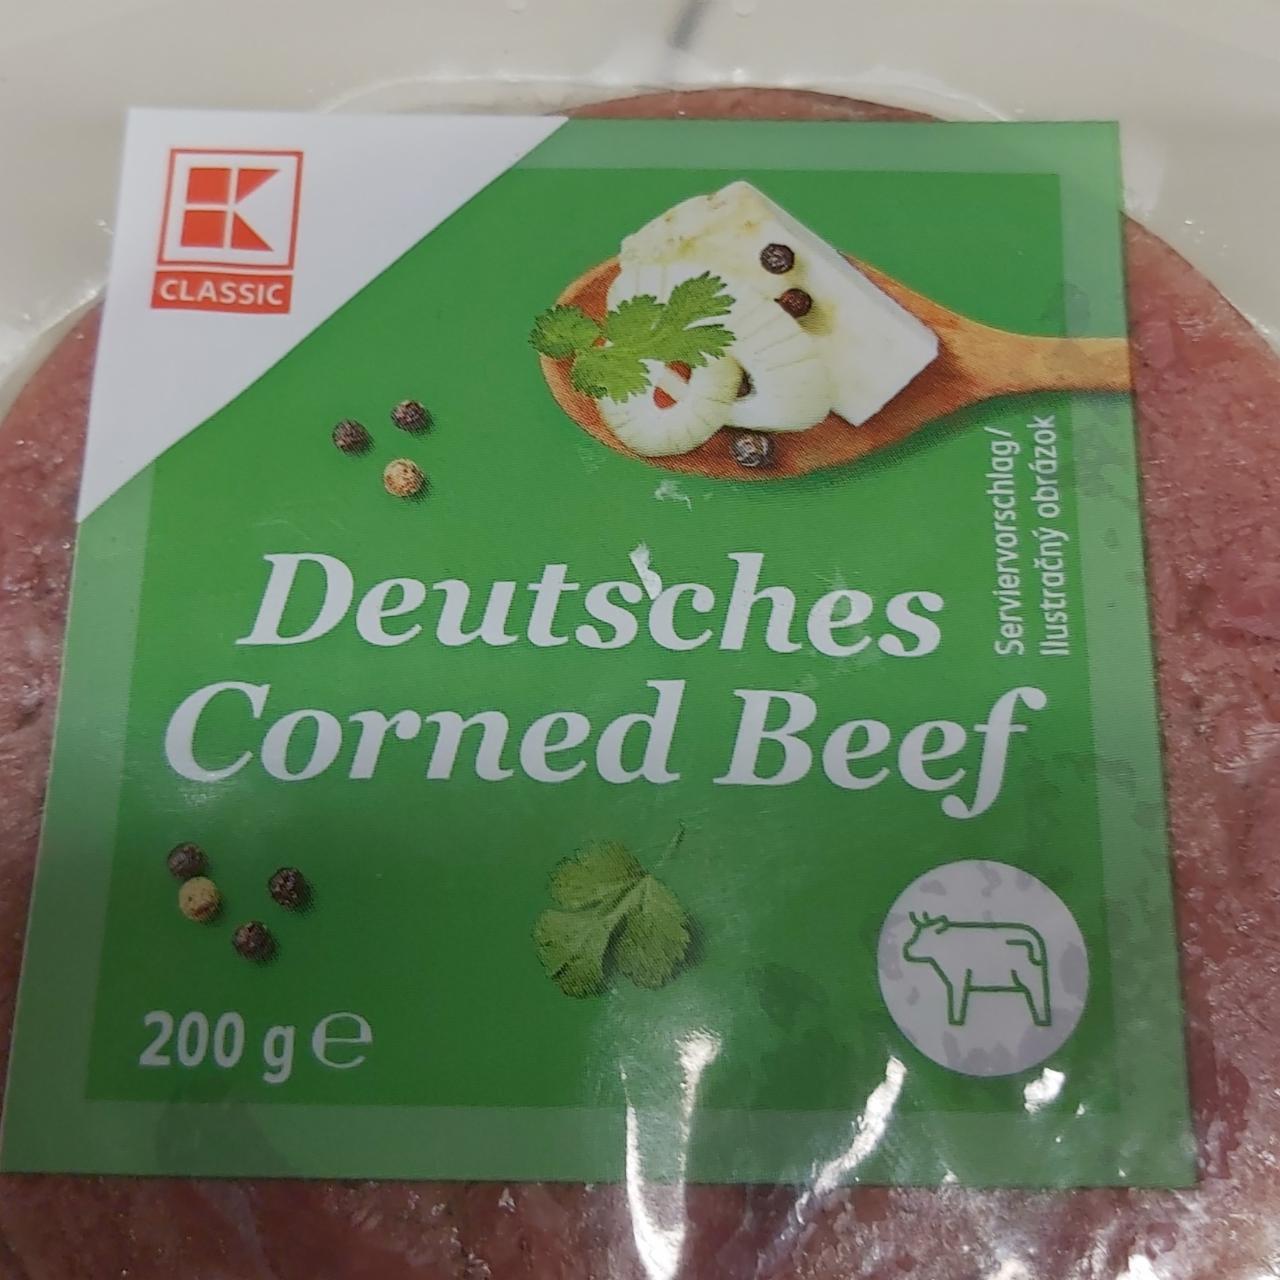 Fotografie - Deutsches Cornes Beef K-Classic